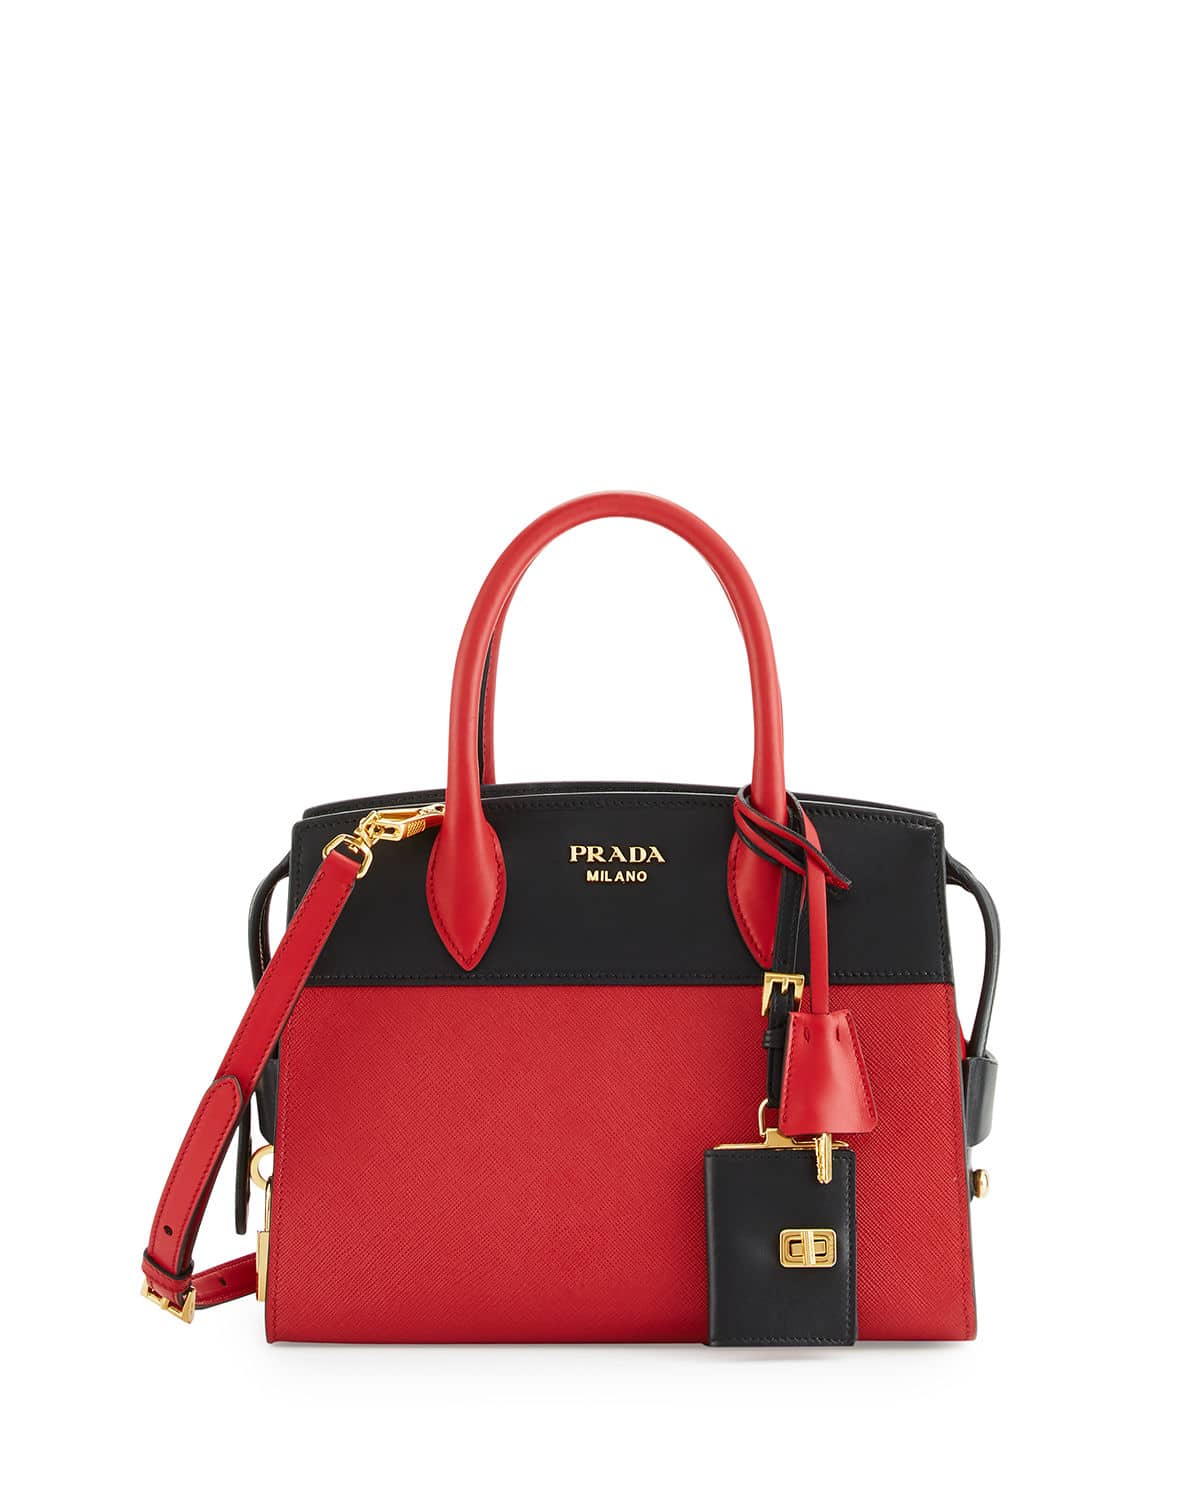 prada red and black handbag